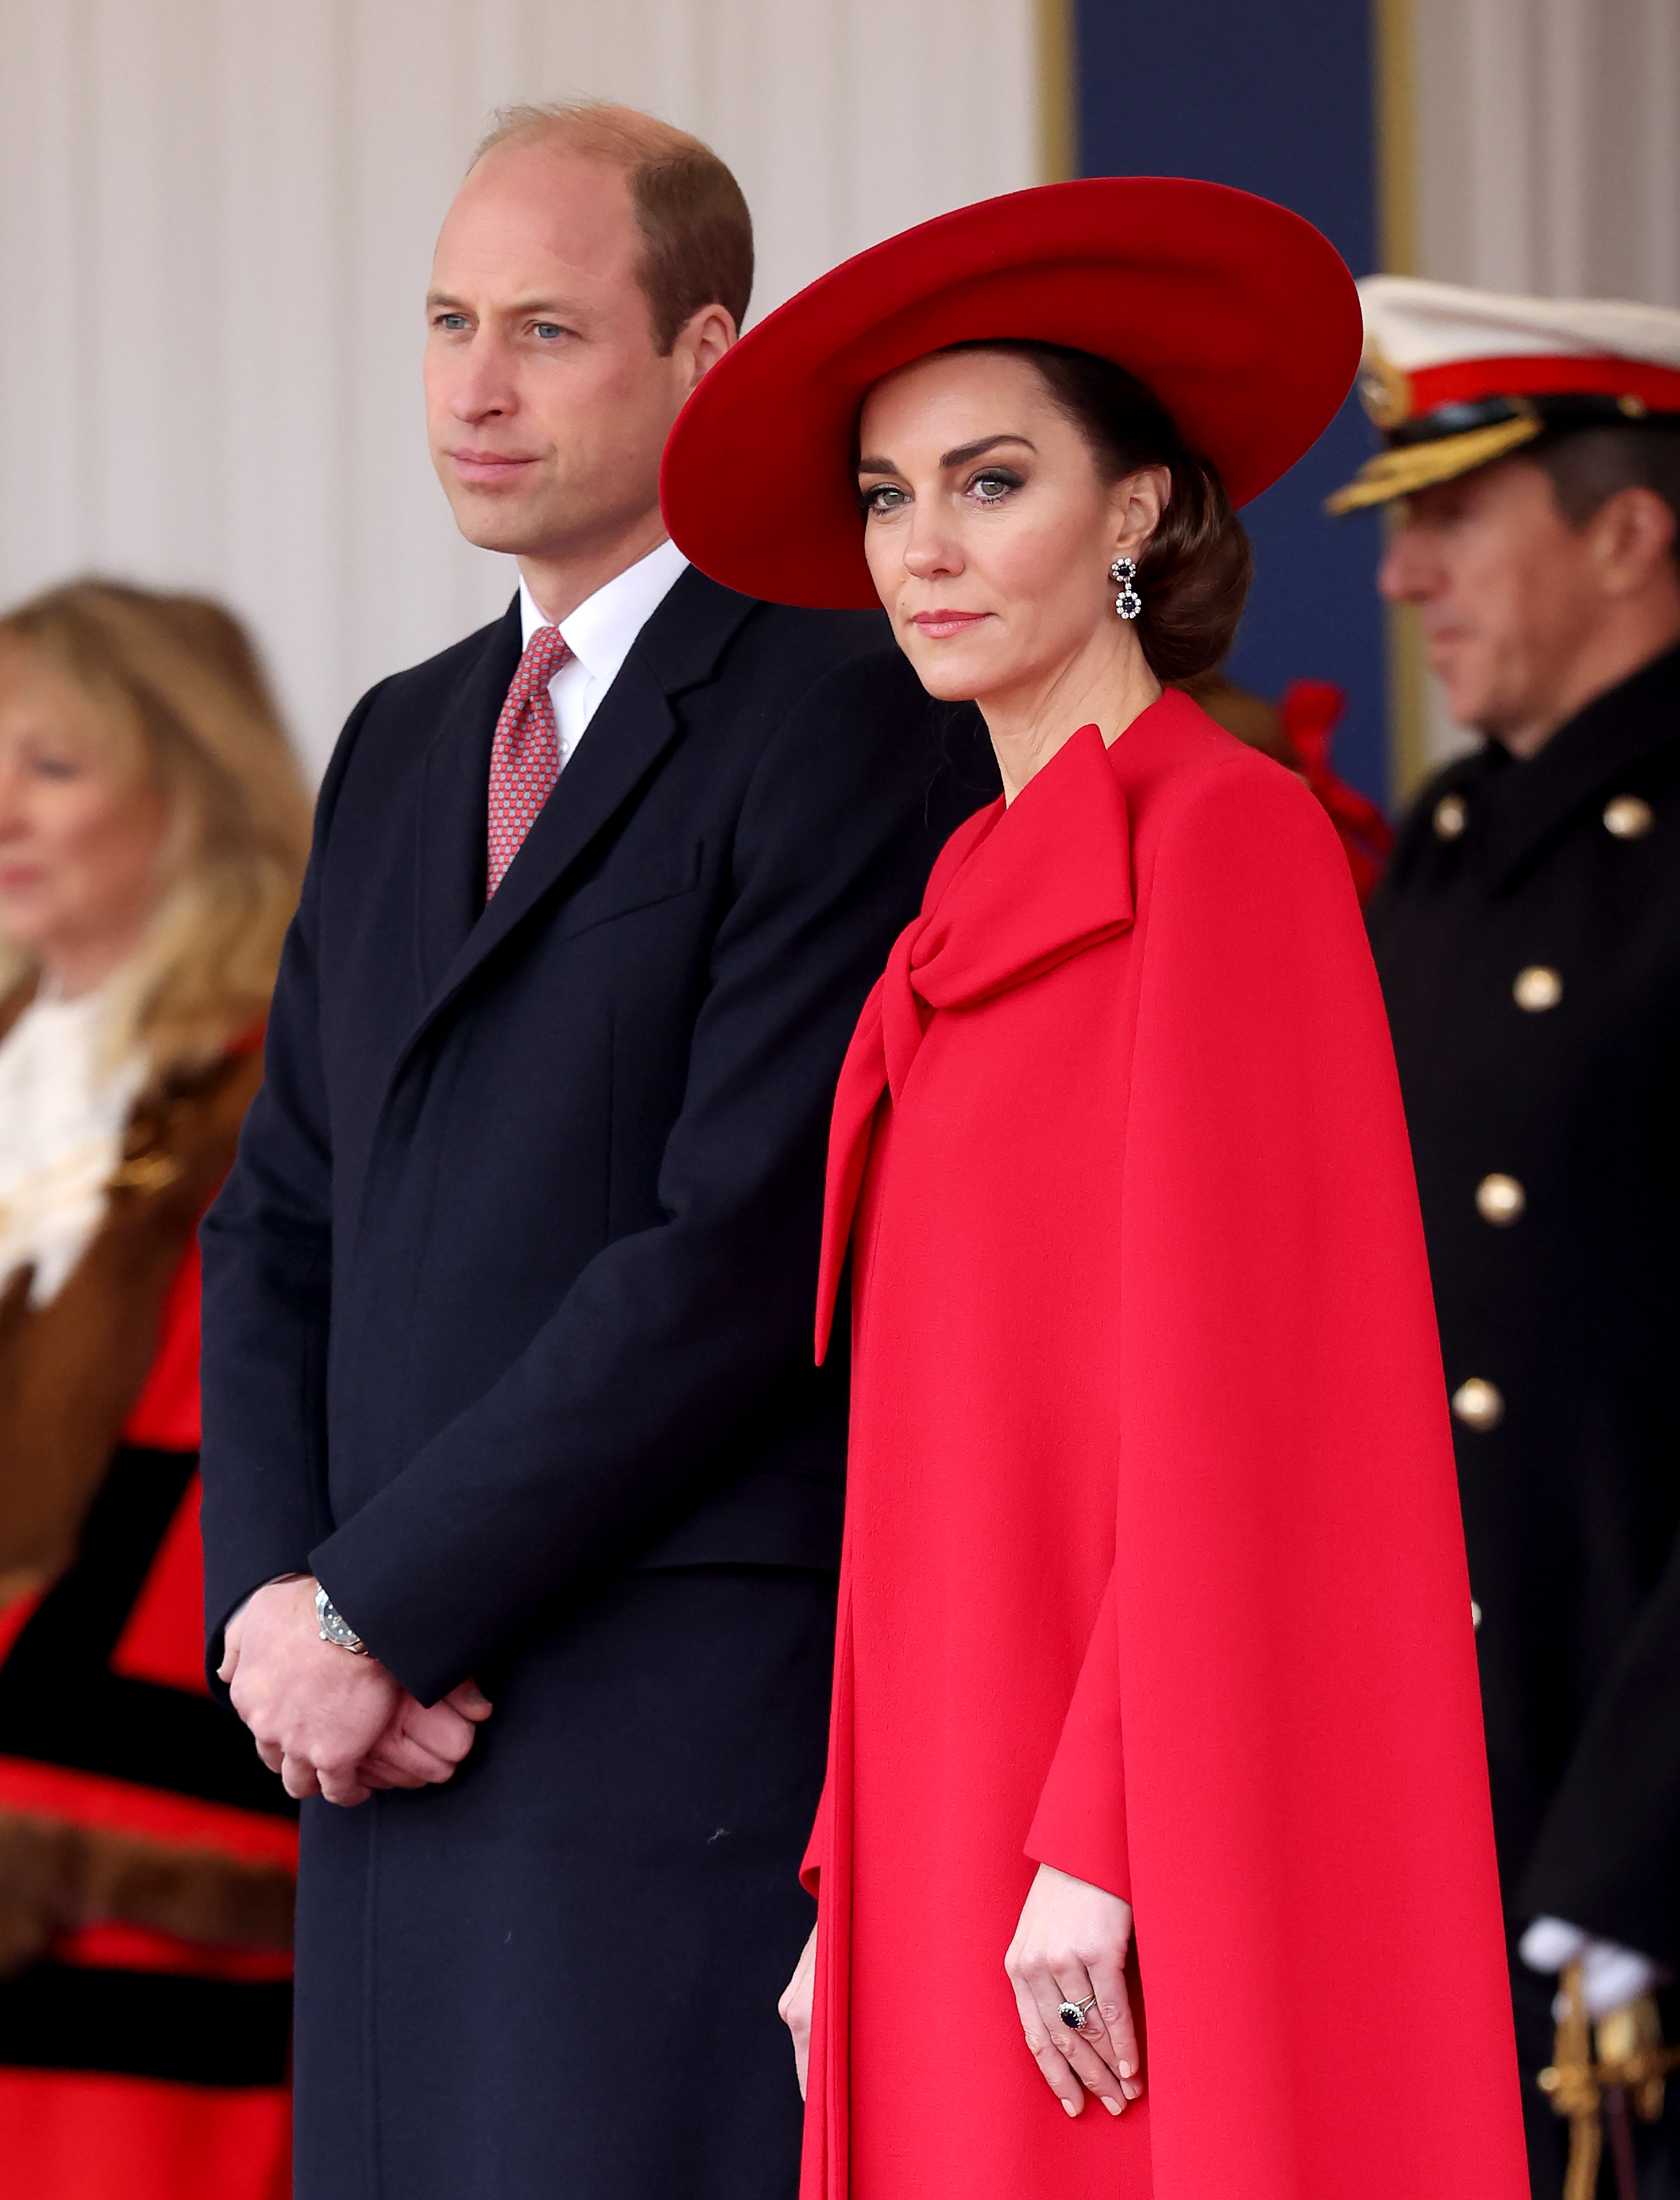 Le prince William et la princesse Catherine lors d'une cérémonie d'accueil, à Horse Guards Parade, pour le président et la première dame de la République de Corée, au premier jour de leur visite d'État, le 21 novembre 2023 à Londres, Angleterre | Source : Getty Images